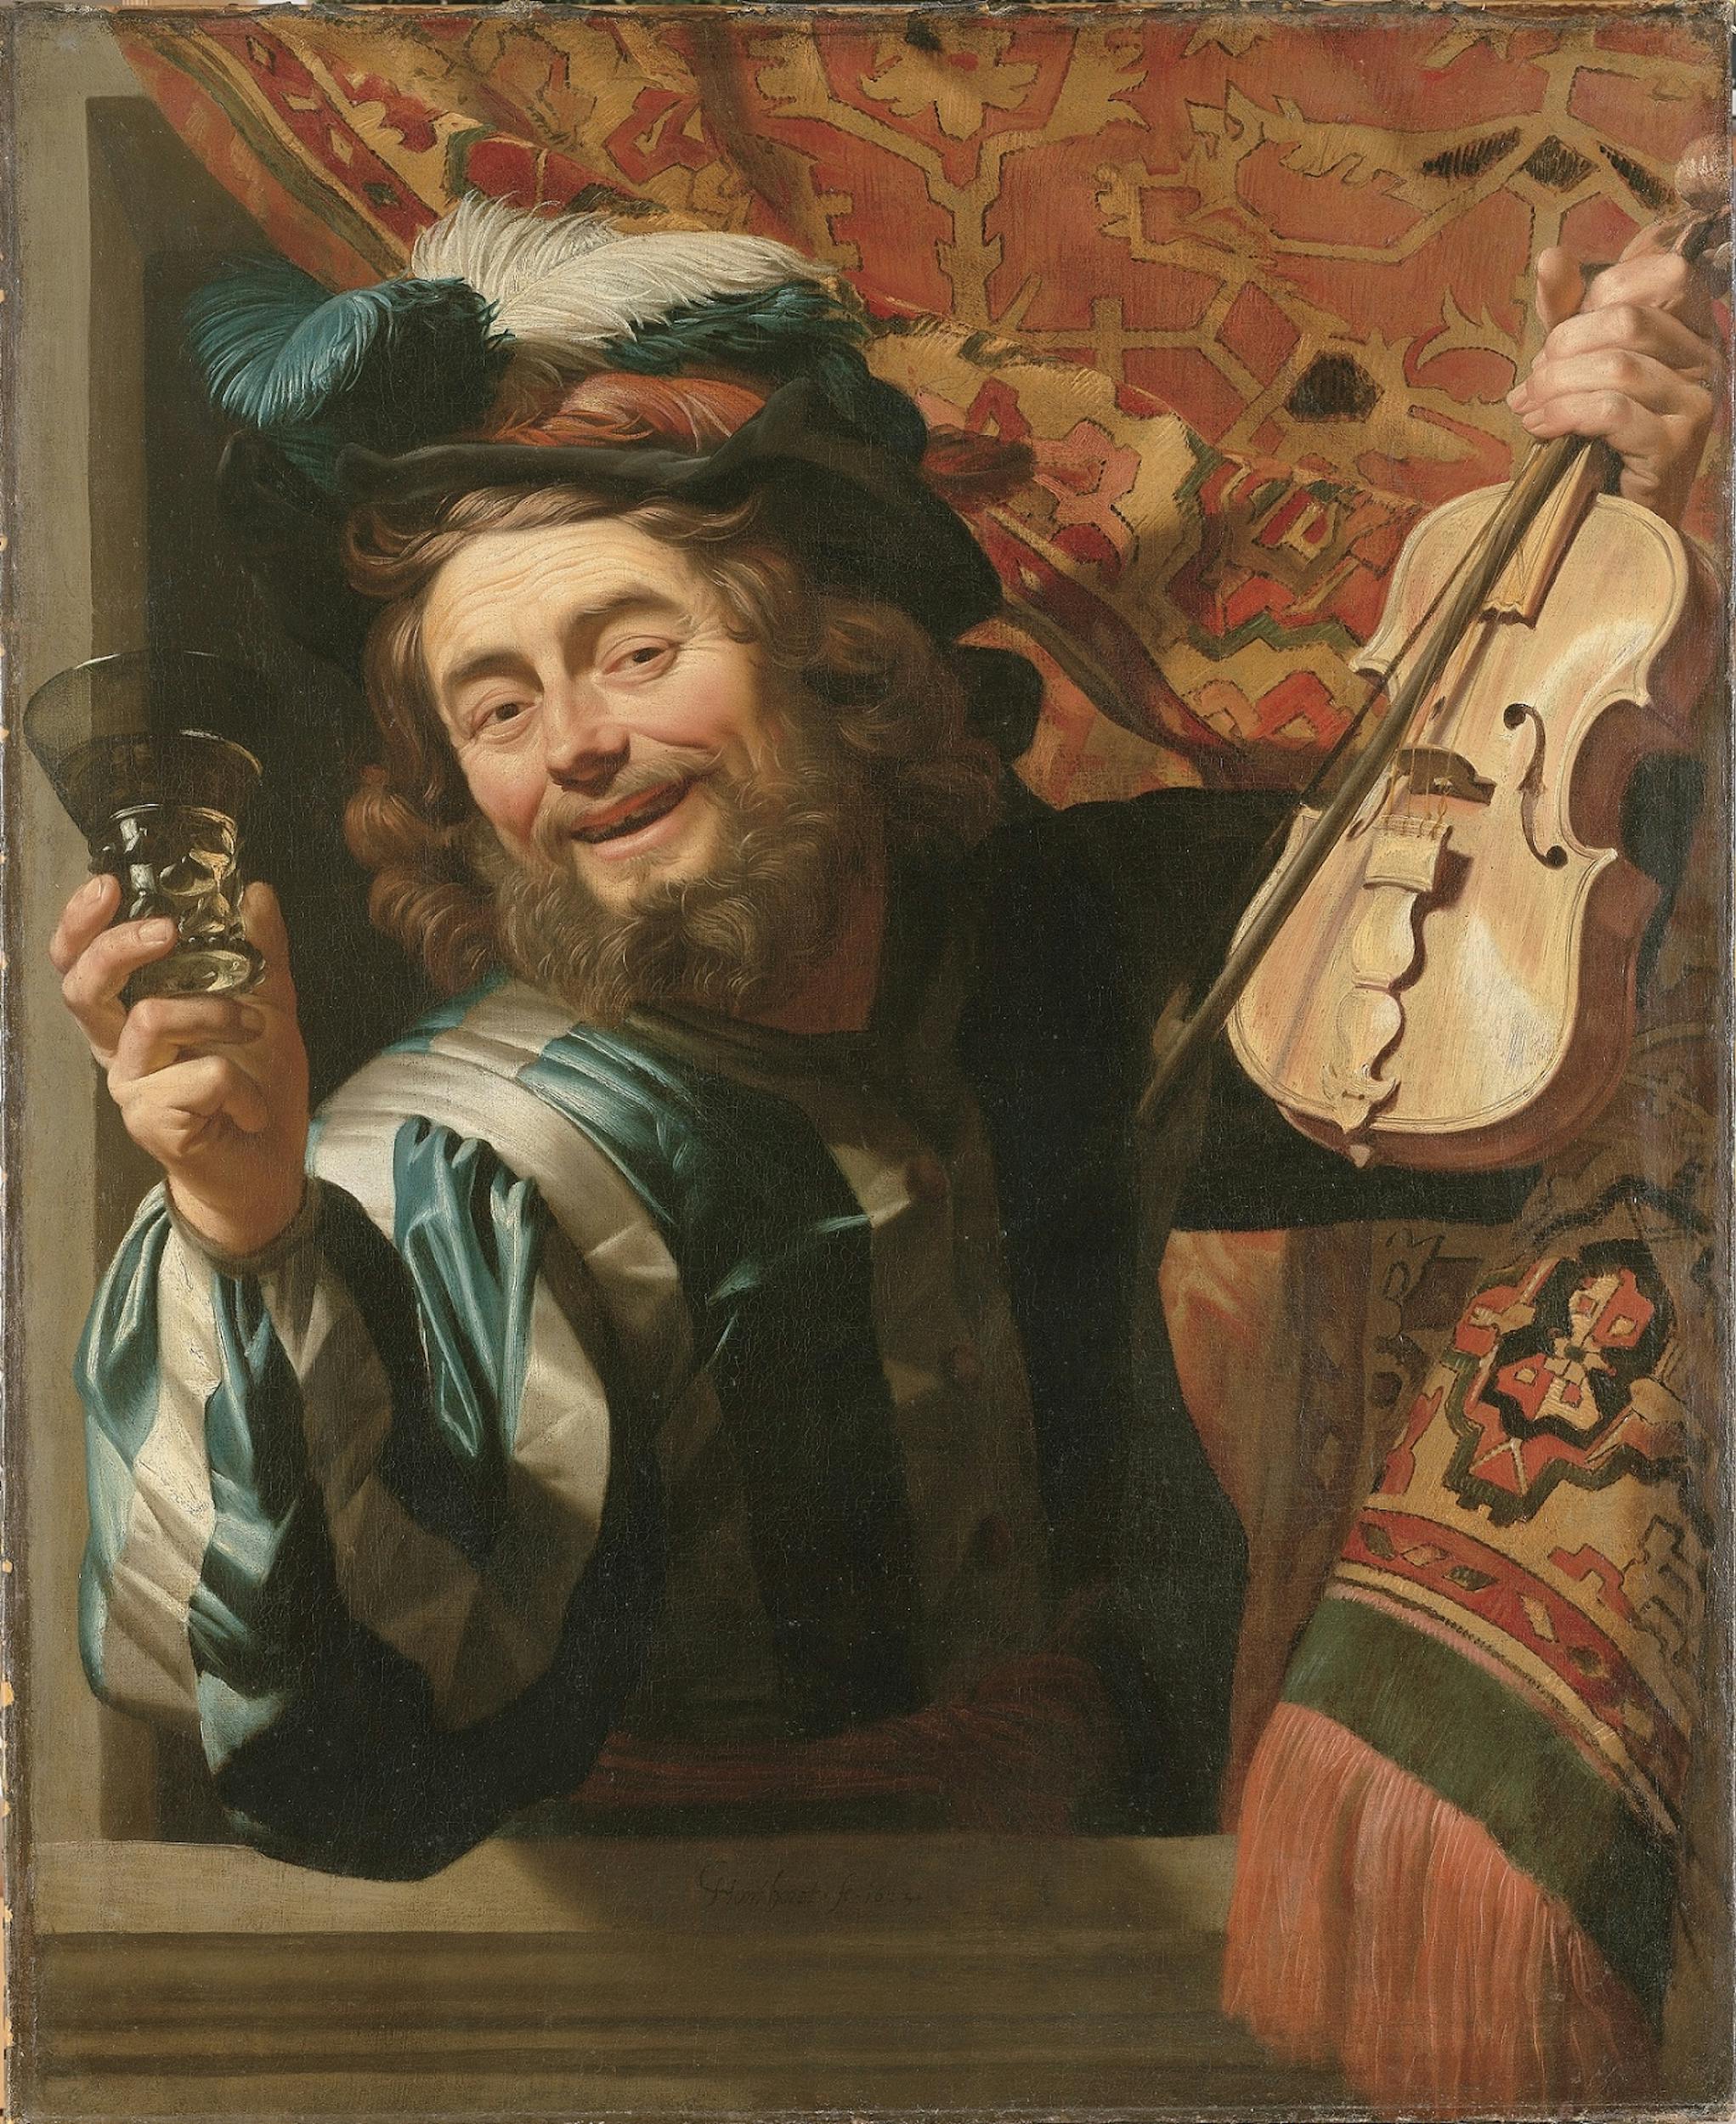 Gerrit van Honthorst detto Gherardo delle Notti (Utrecht 1592 - 1656), Allegro violinista con bicchiere di vino, 1623, olio su tela, Rijksmuseum, Amsterdam.